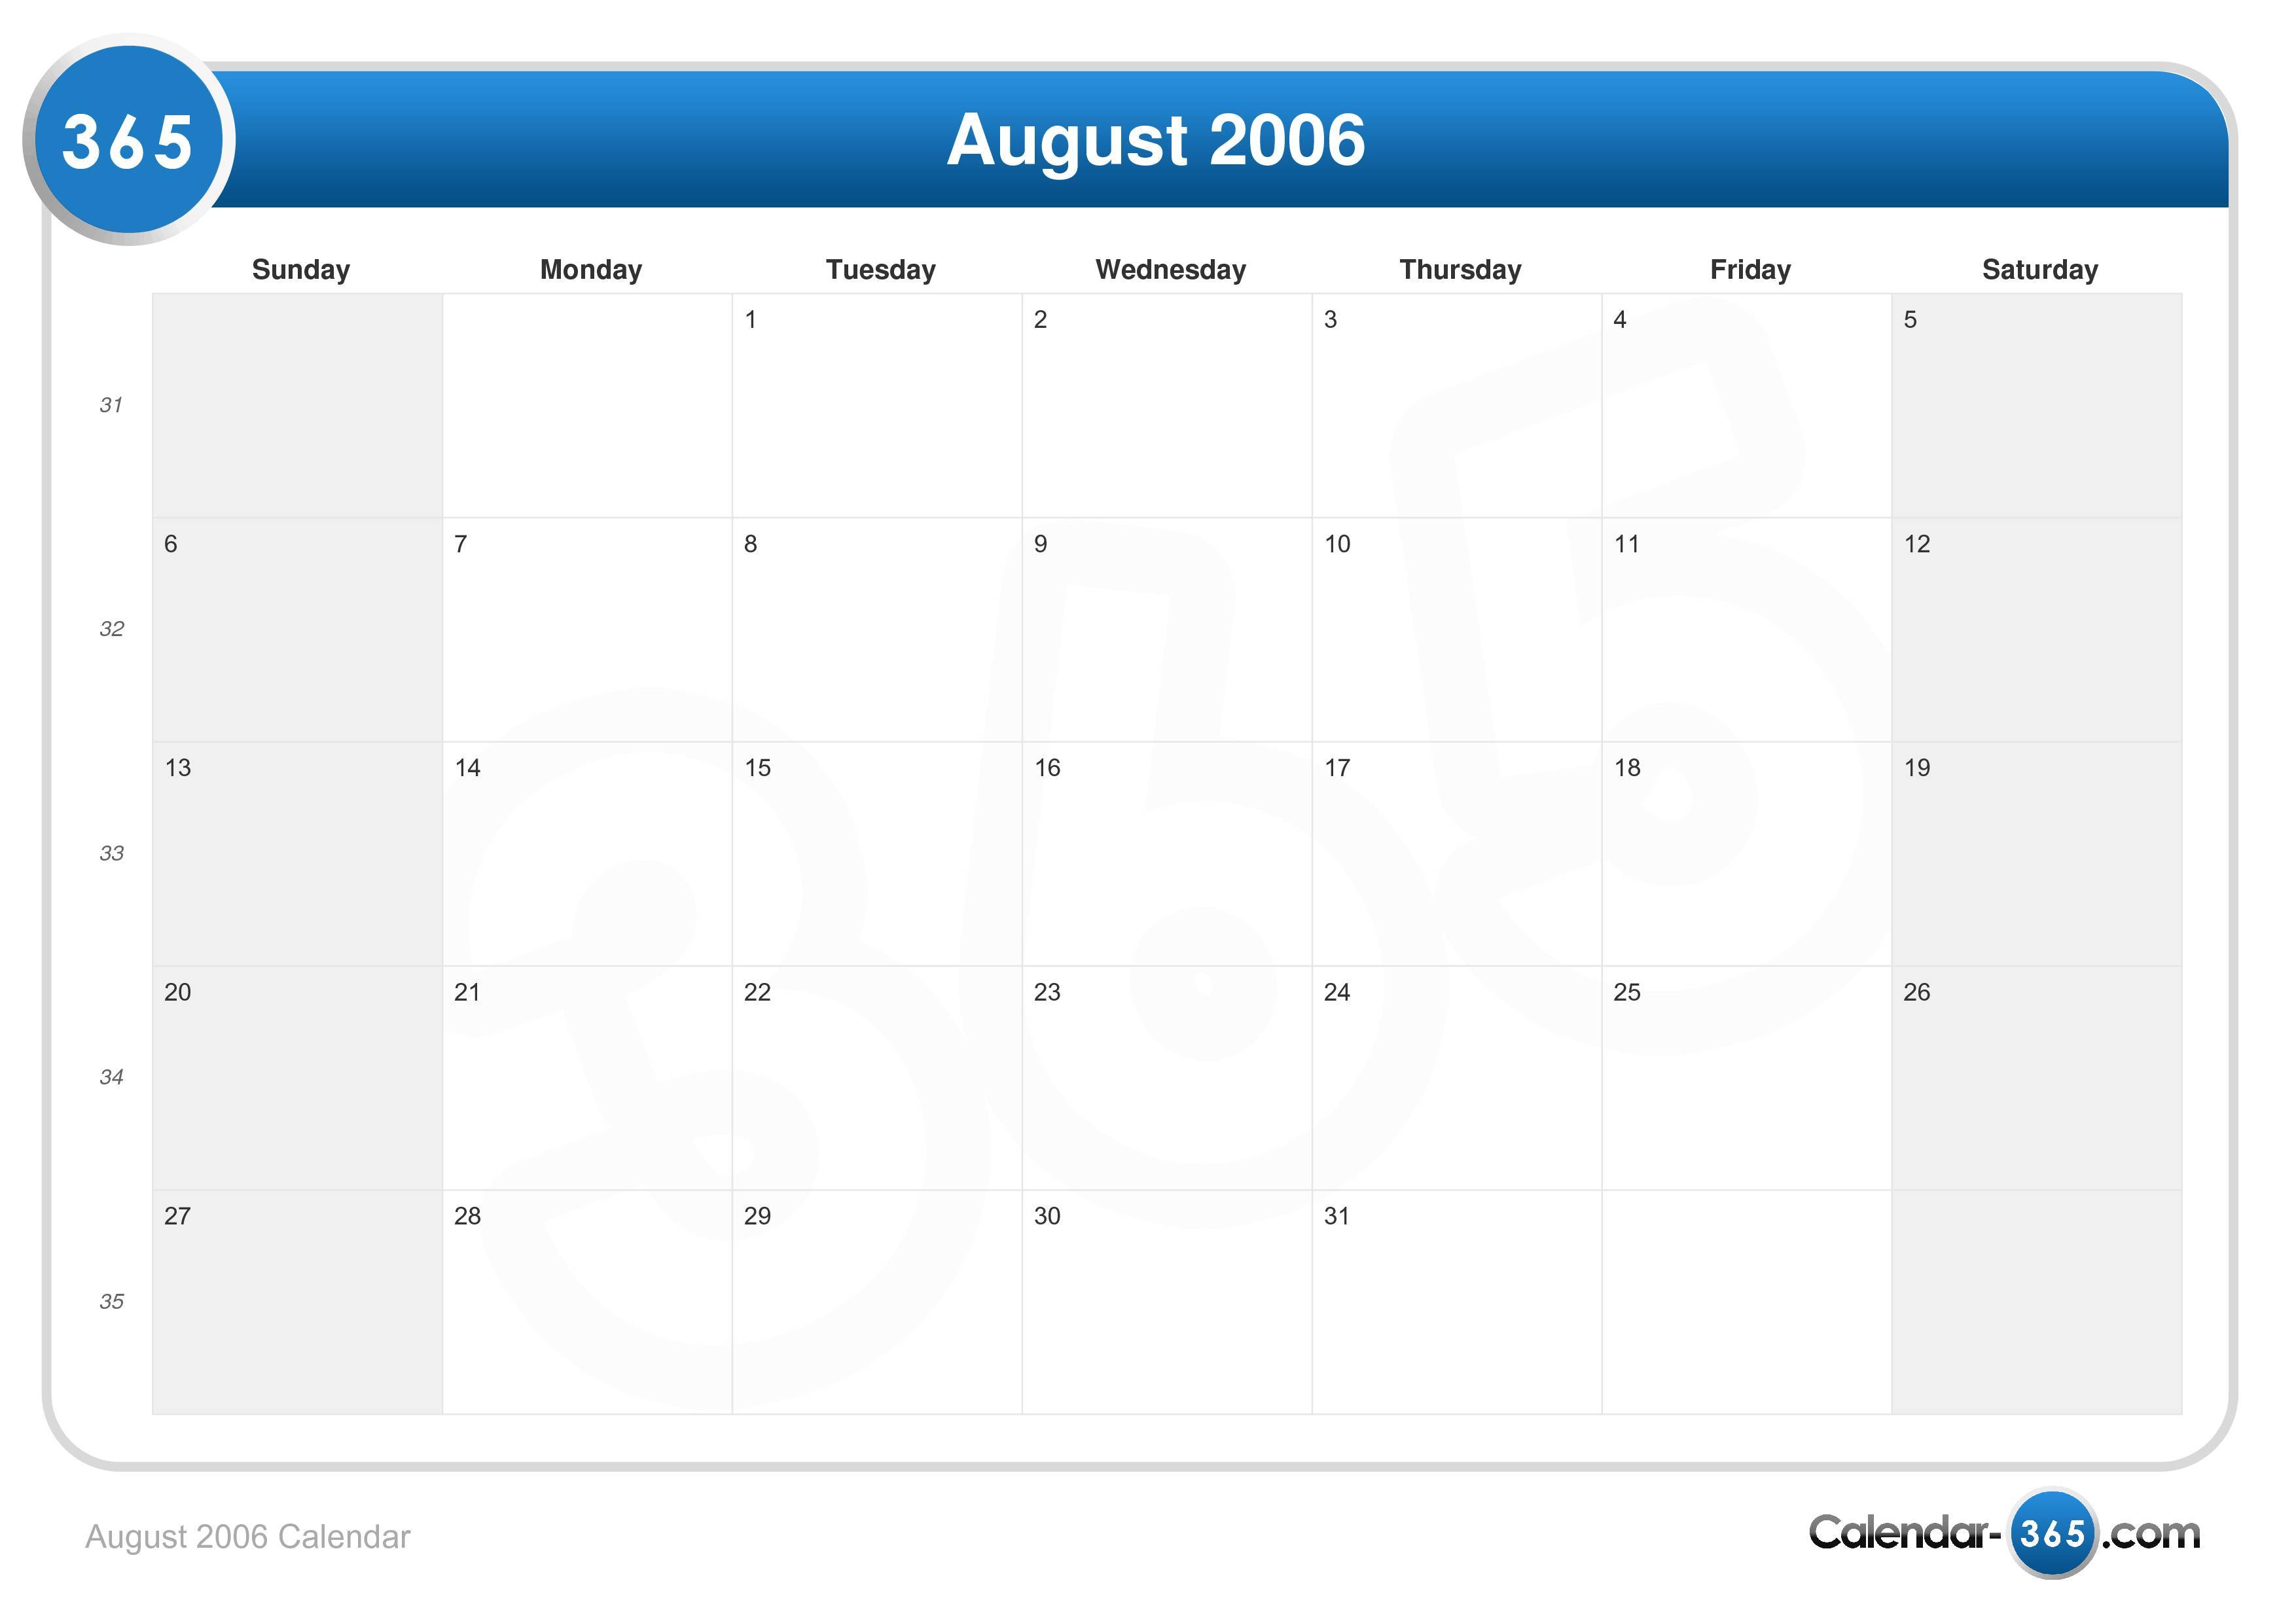 August 2006 Calendar